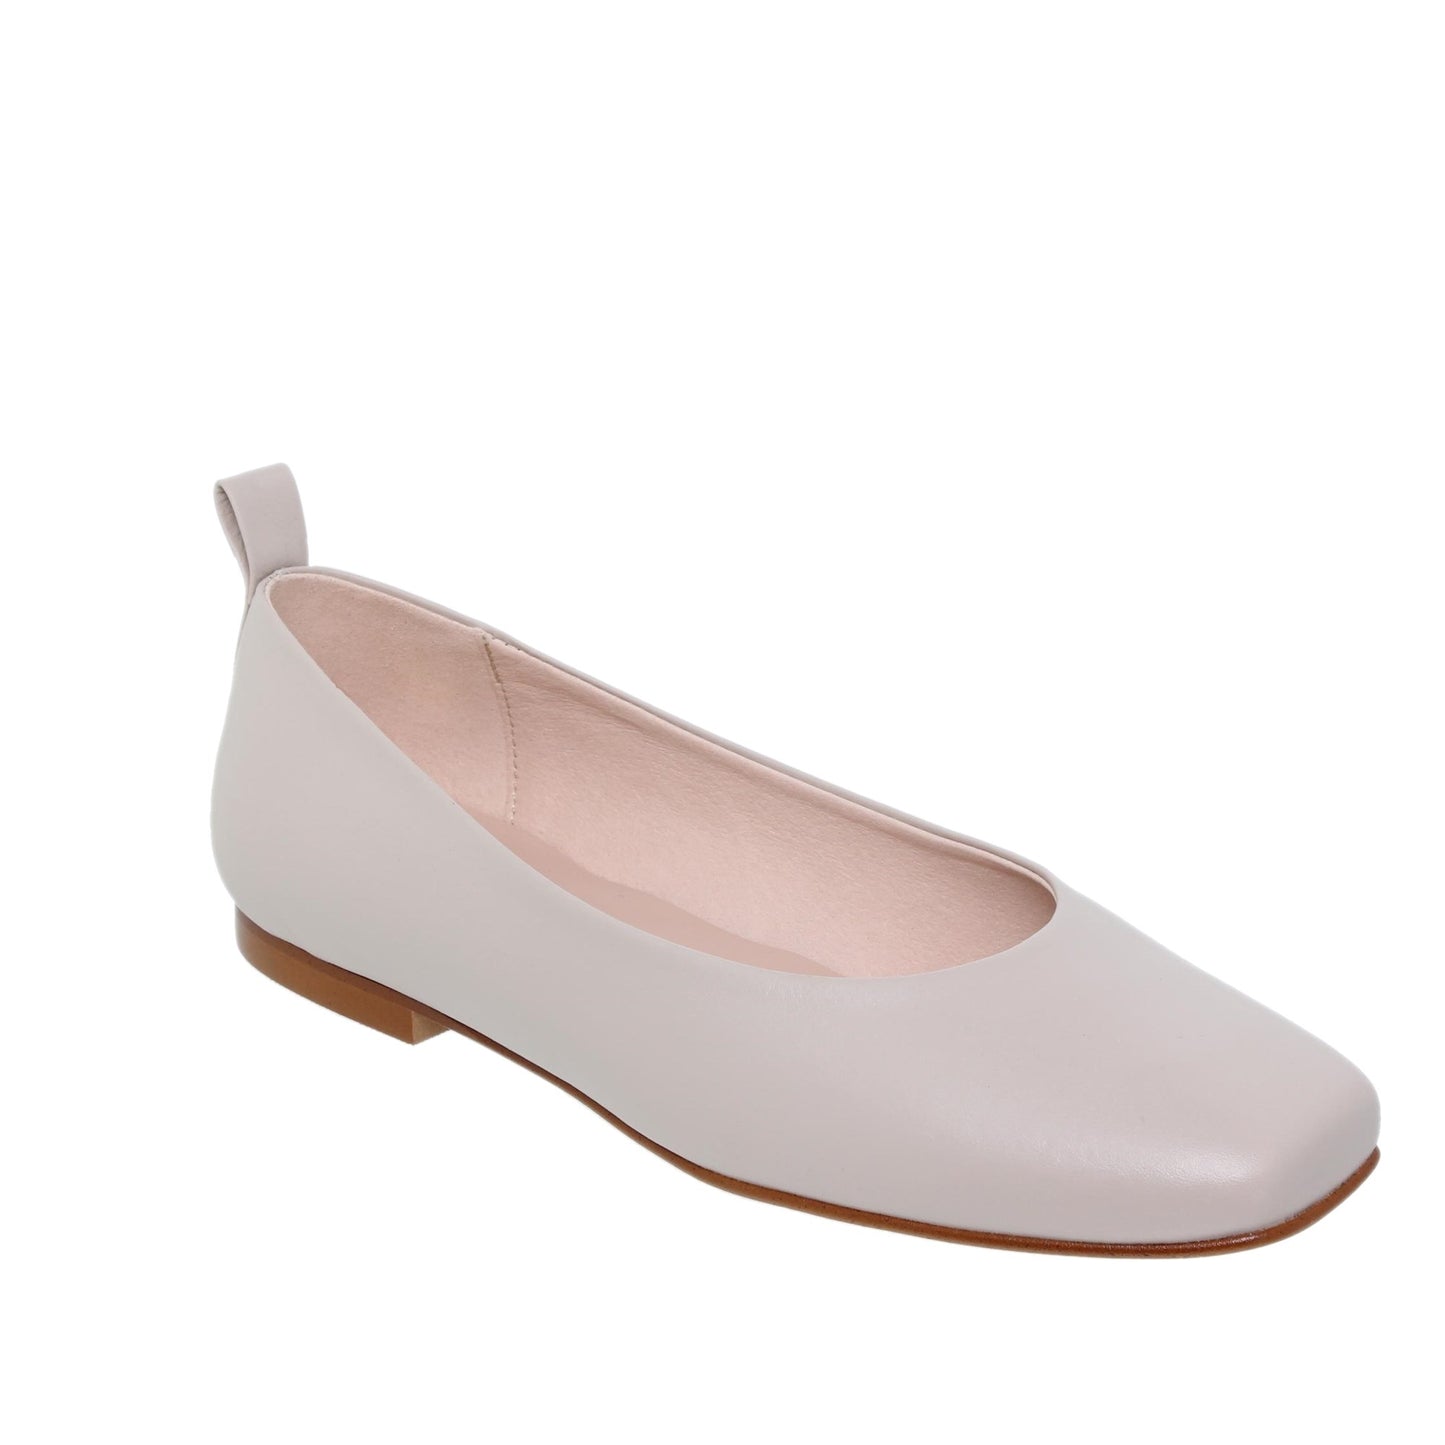 Zapato plano bailarina mujer Magnolia beige